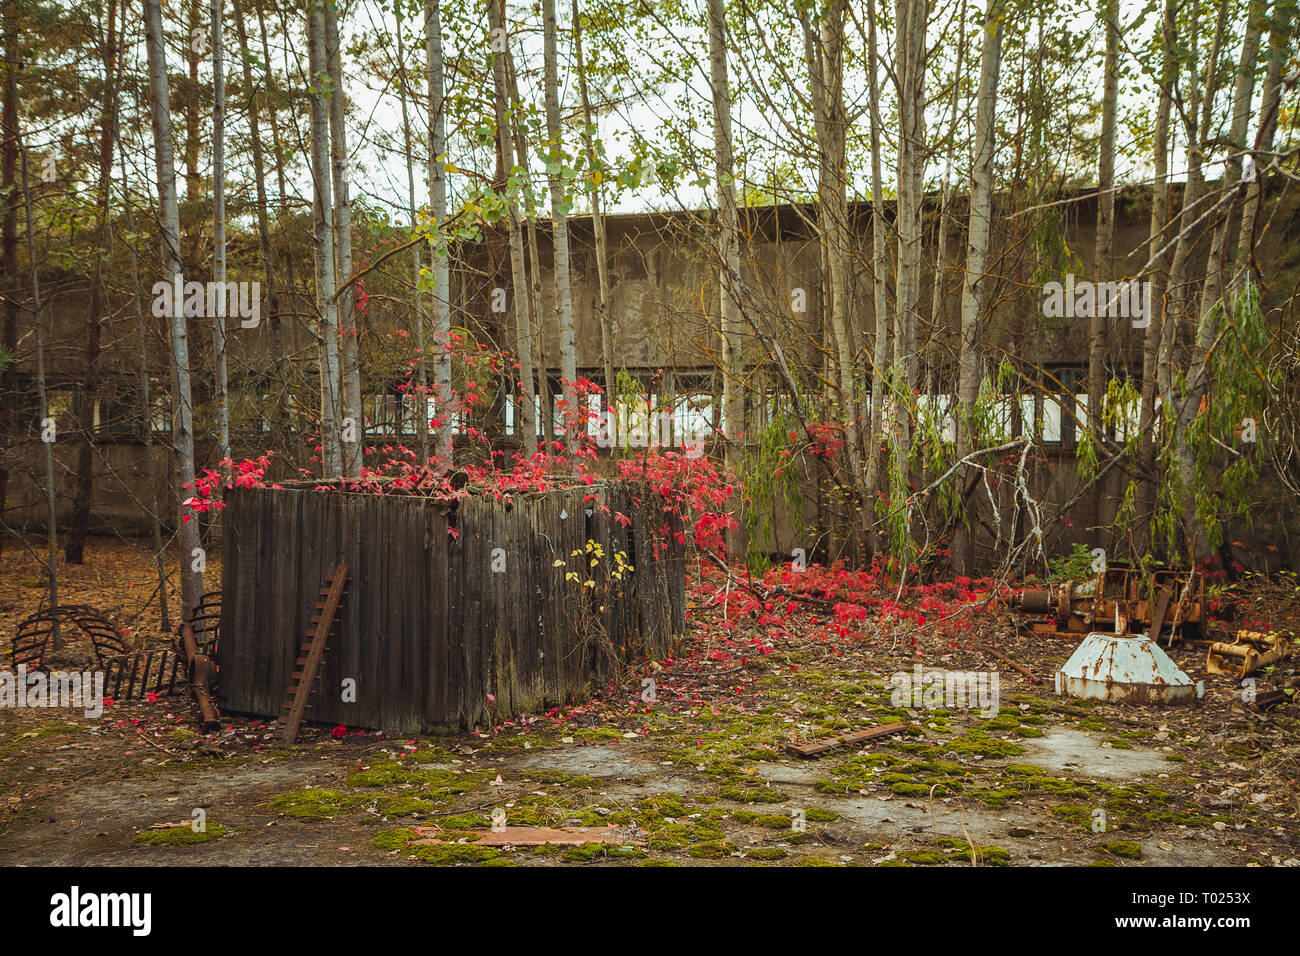 Tschernobyl Sperrzone. Radioaktive Zone in der Stadt Pripyat - verlassene Geisterstadt. Die Geschichte der Katastrophe von Tschernobyl. Verloren in der Ukraine, SSSR Stockfoto